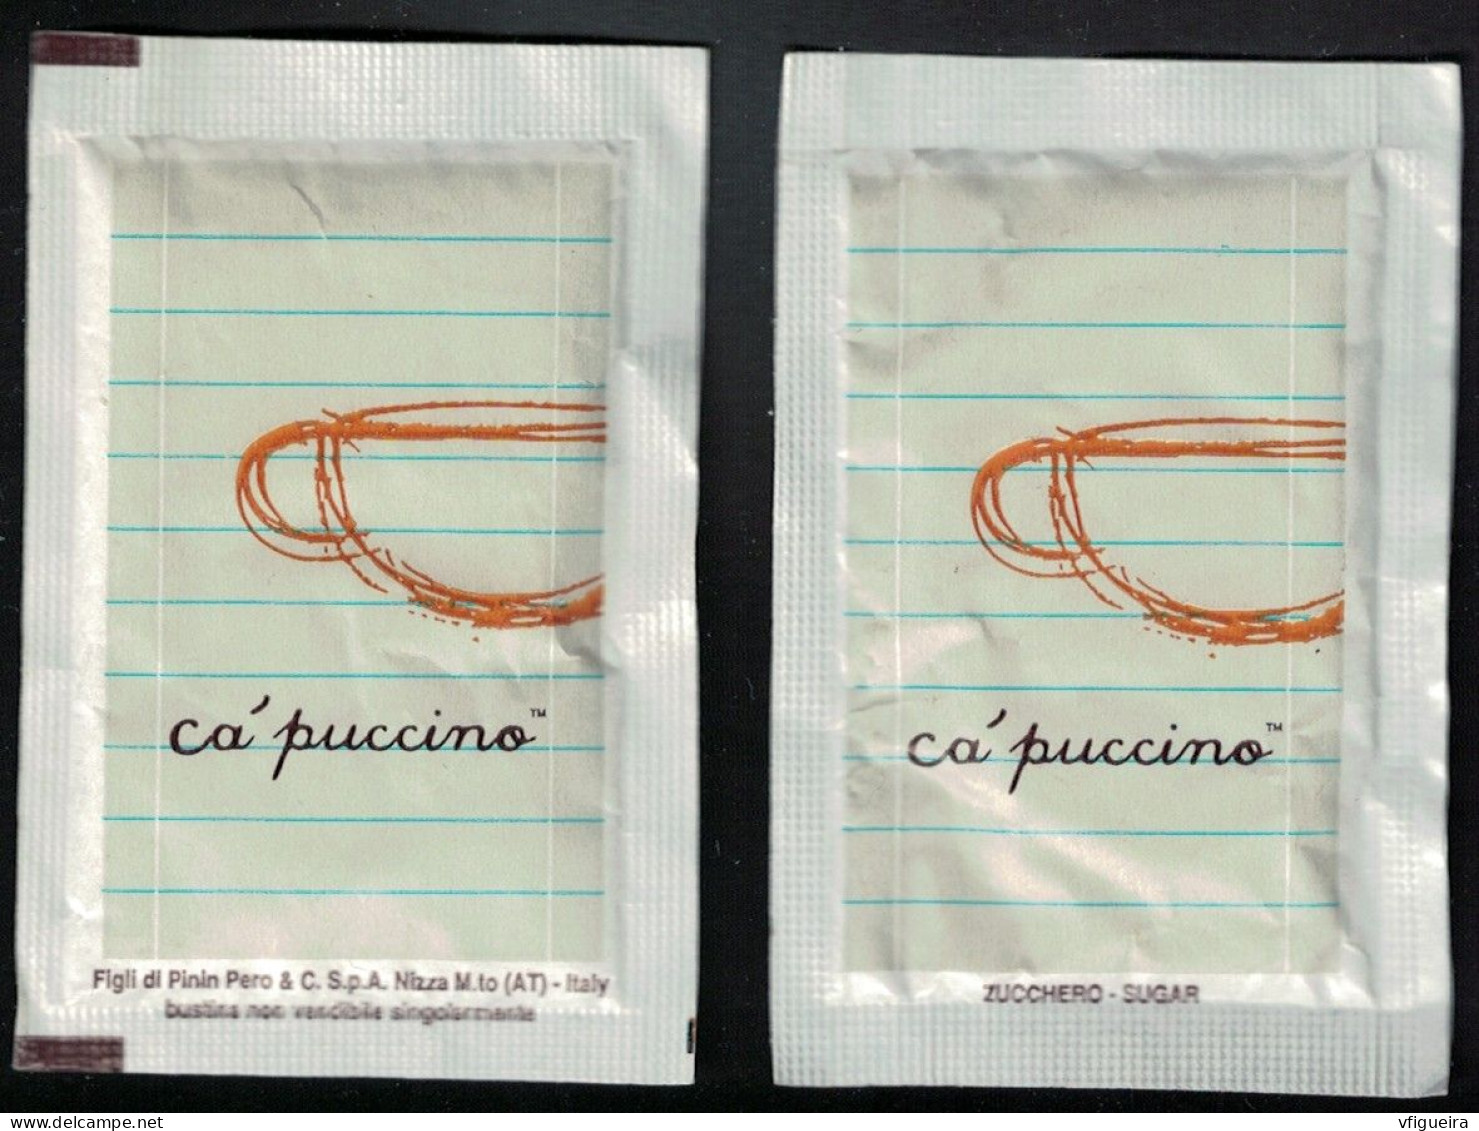 Italie Sachet Sucre Sugar Bag Capuccino Figli Di Pinin Pero White Blanc - Zucchero (bustine)